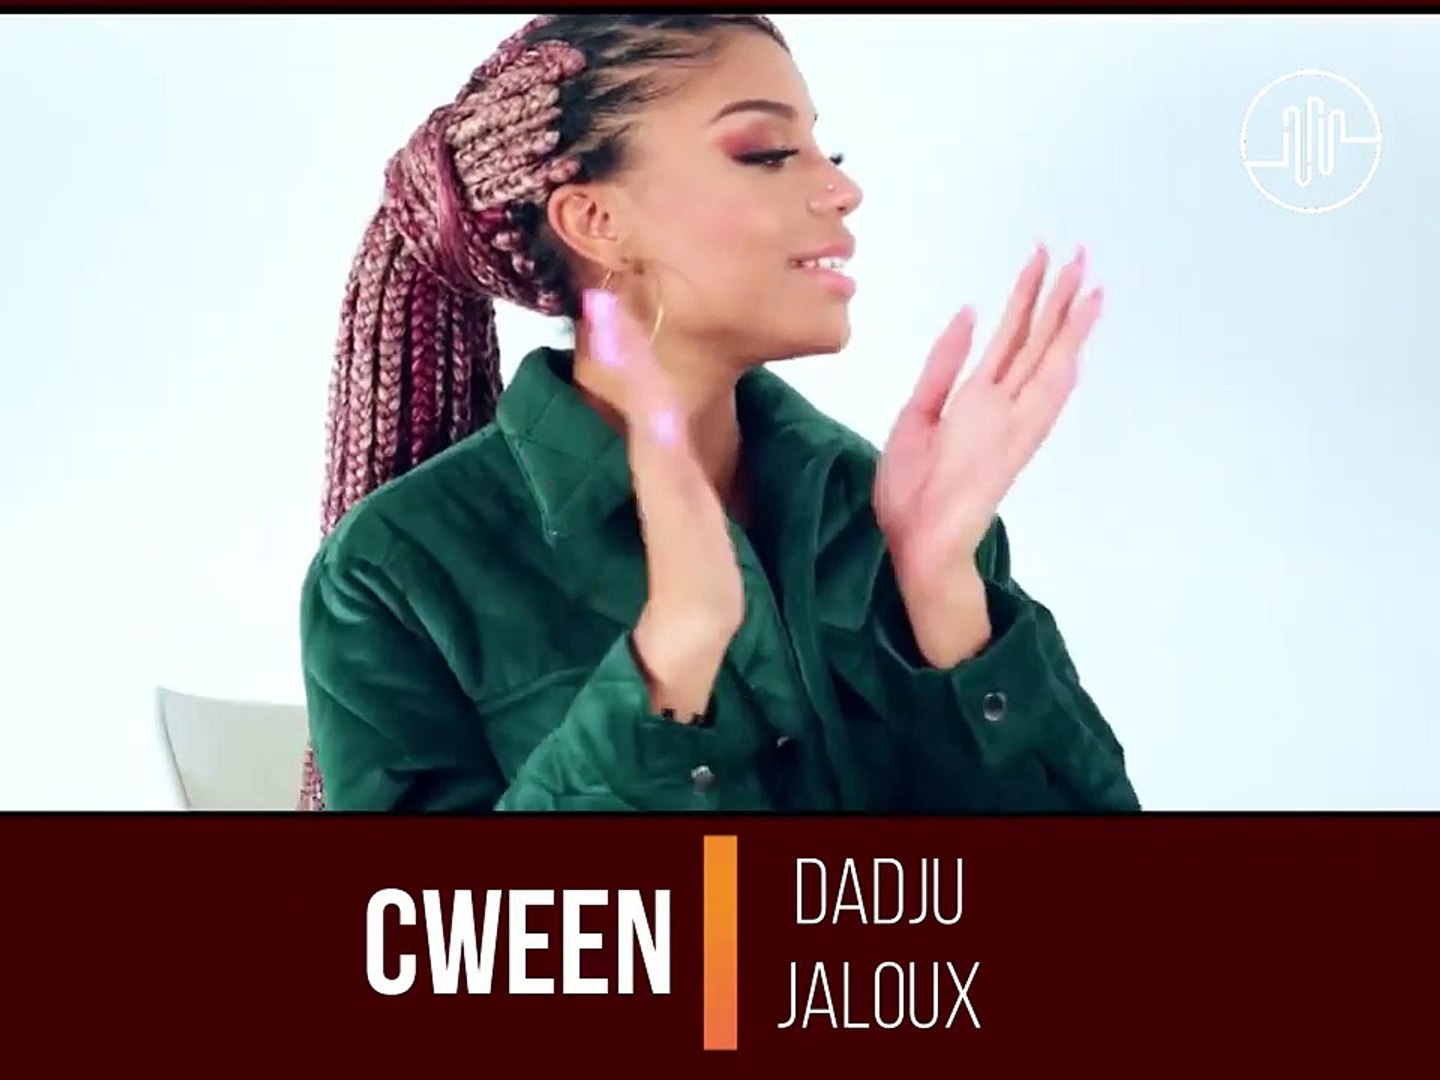 Dadju - Jaloux (Cween Cover) - Vidéo Dailymotion